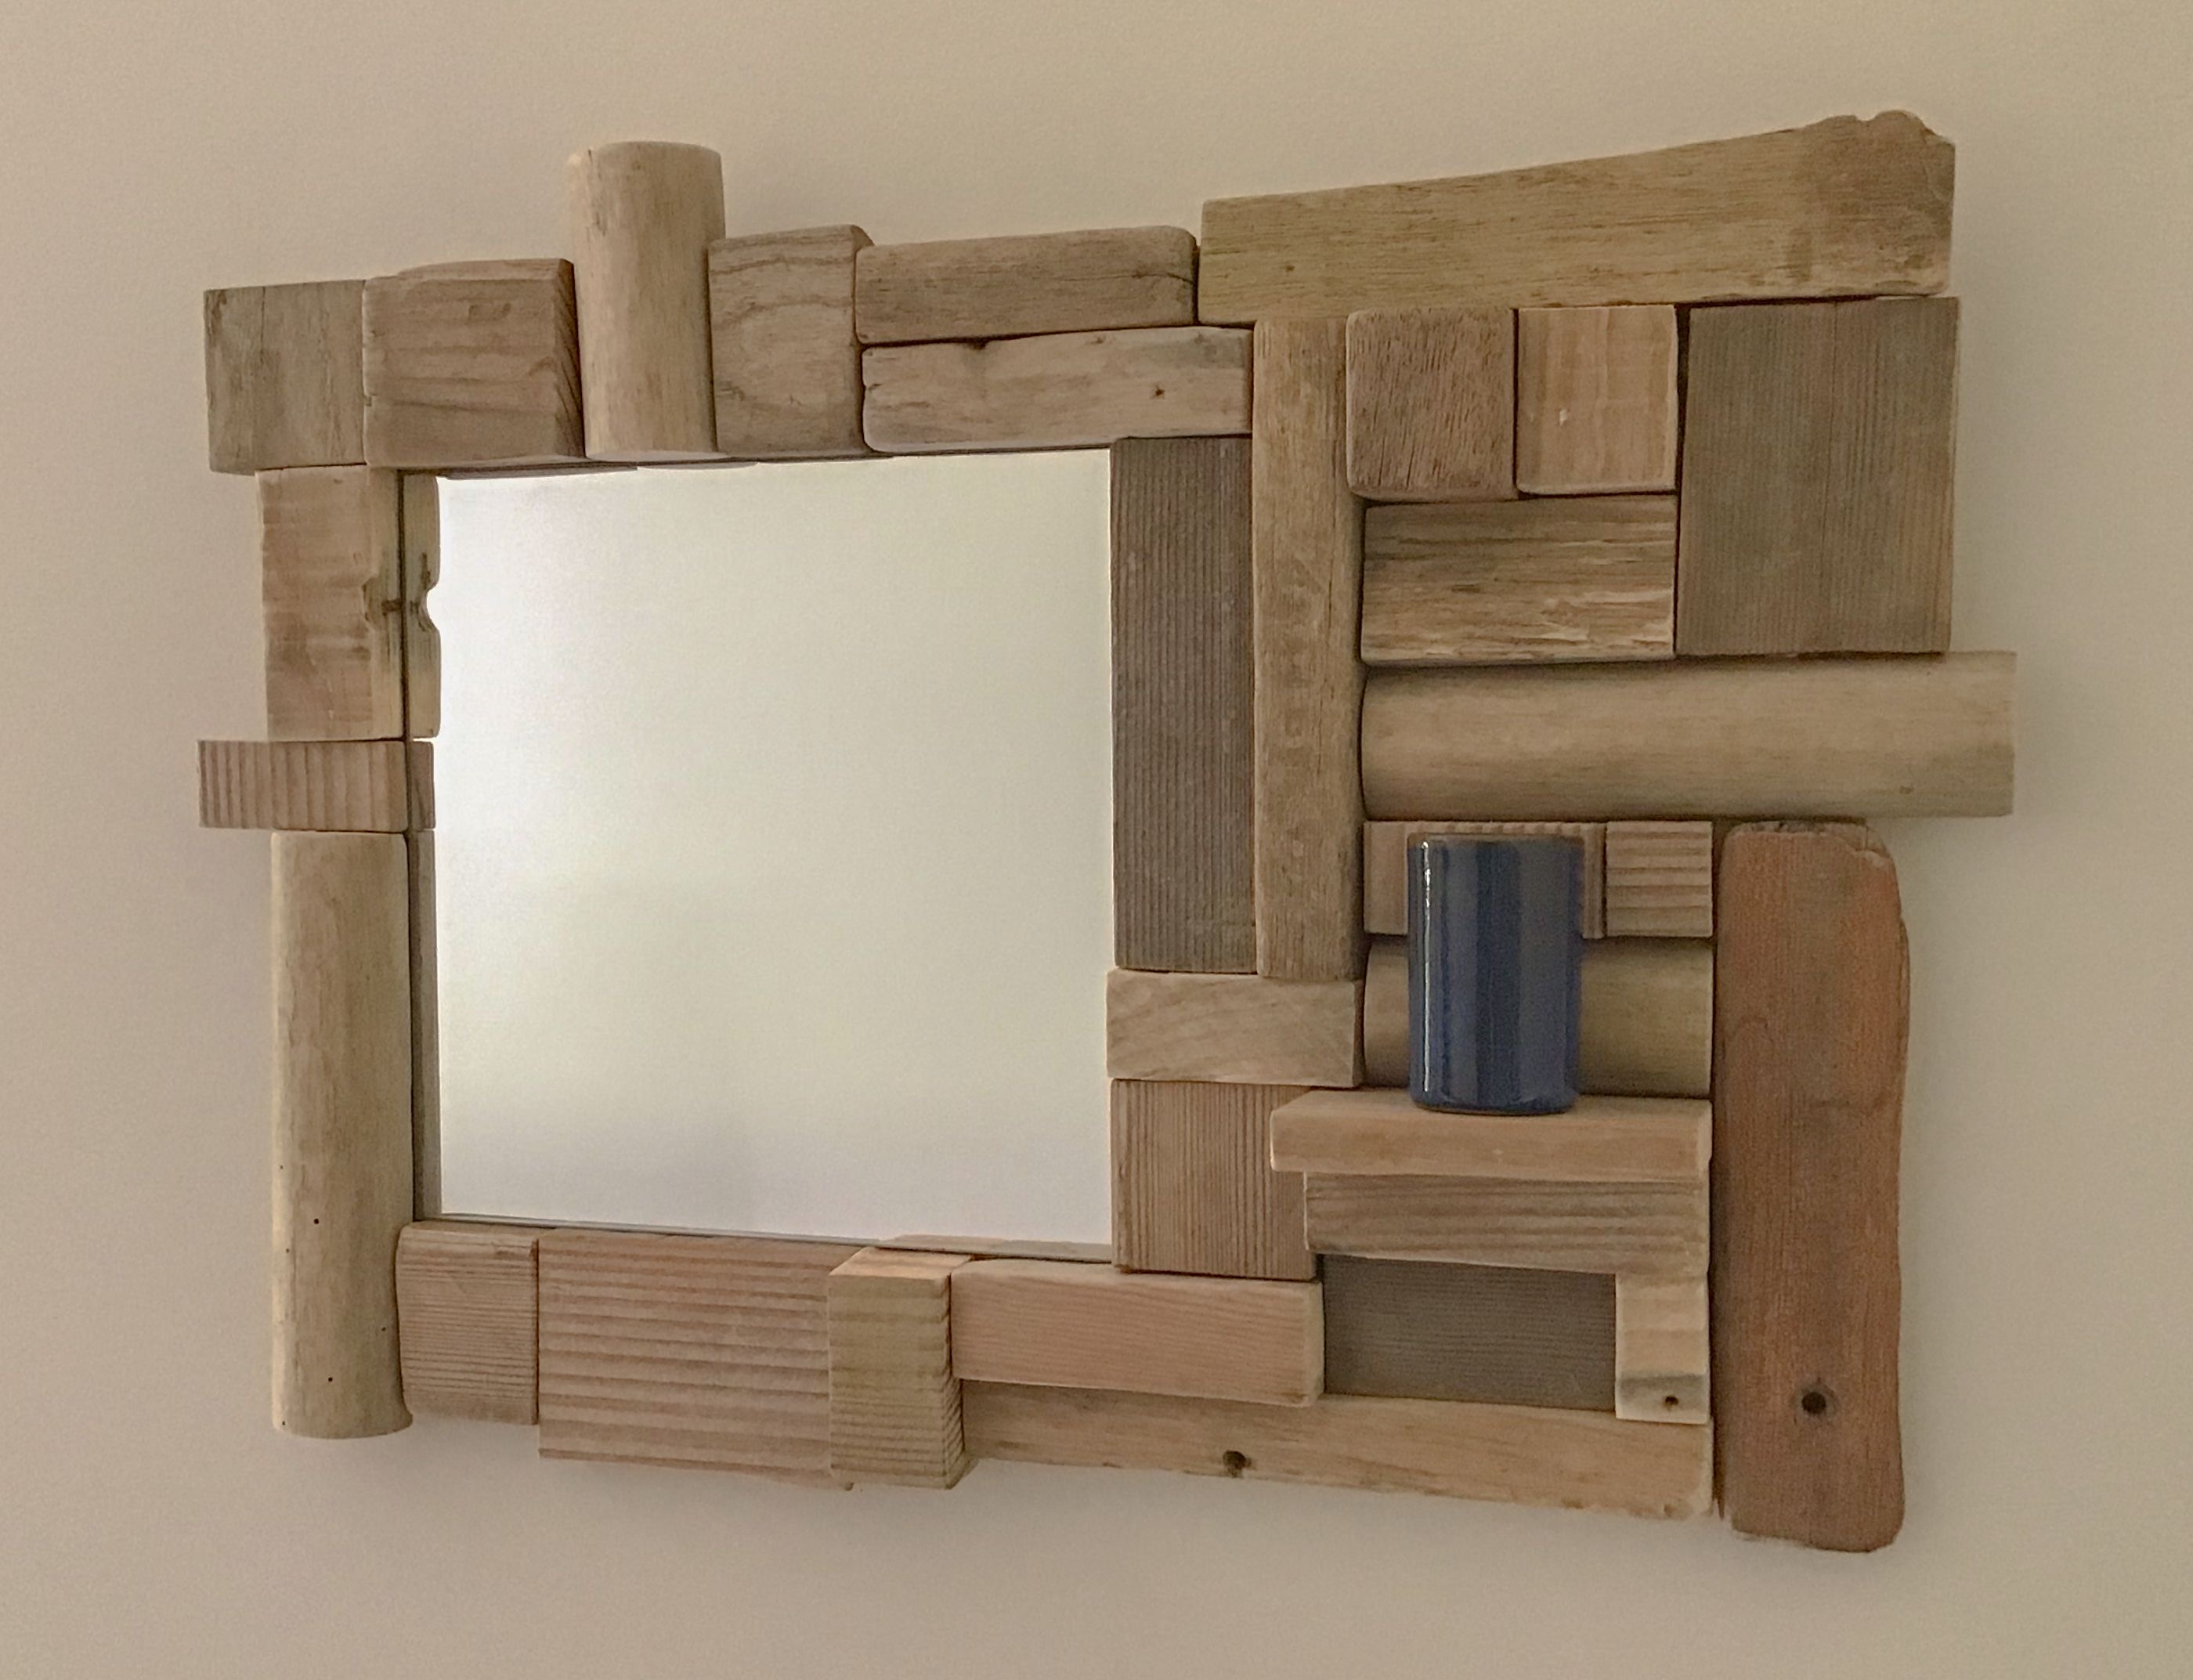 Un magnifique miroir rectangulaire en bois flotté